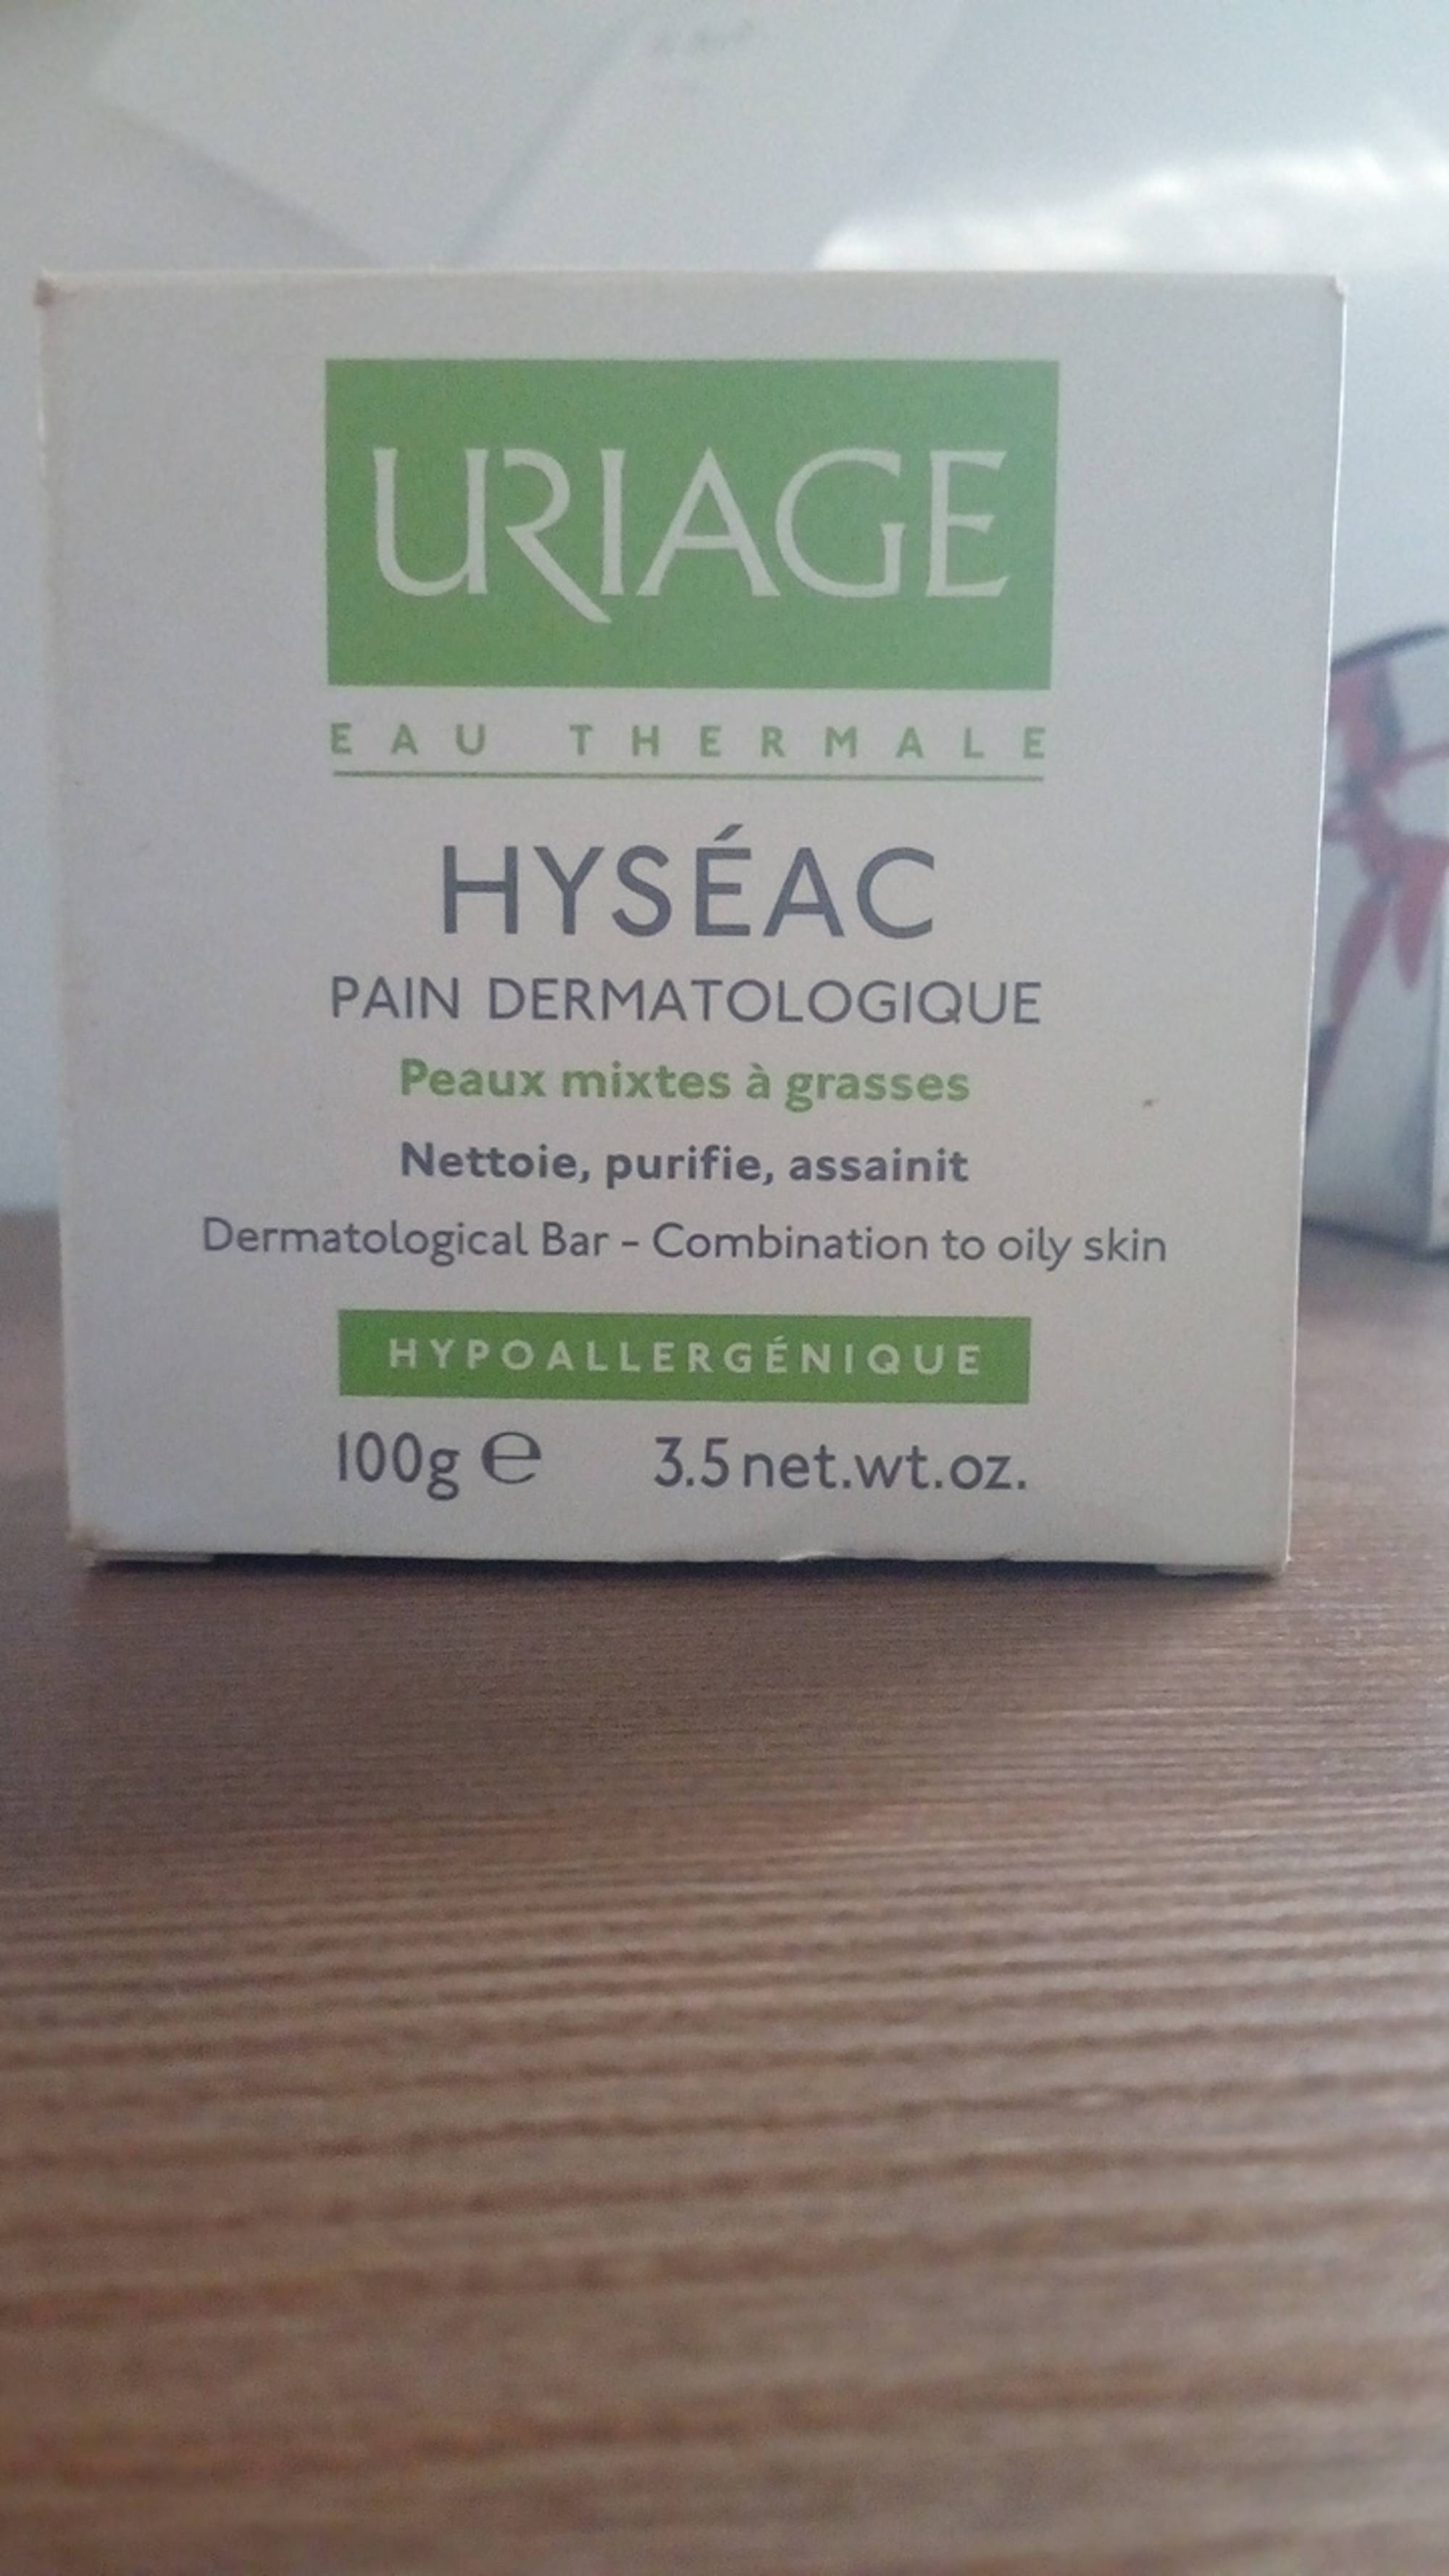 URIAGE - Hyséac - Pain dermatologique